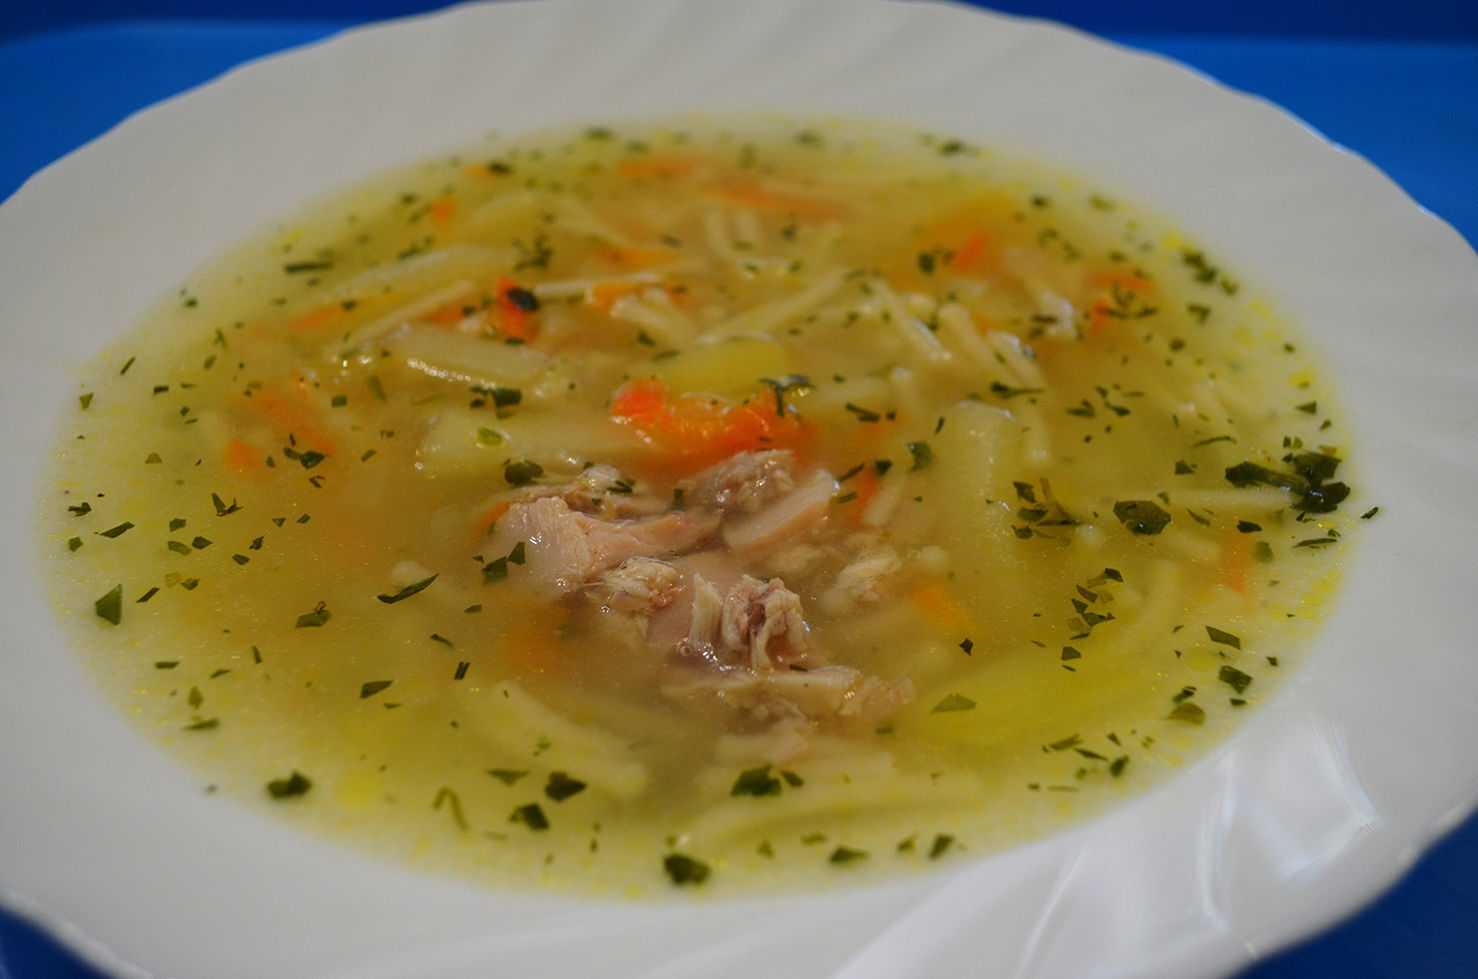 Куриный суп с плавленным сыром и вермишелью